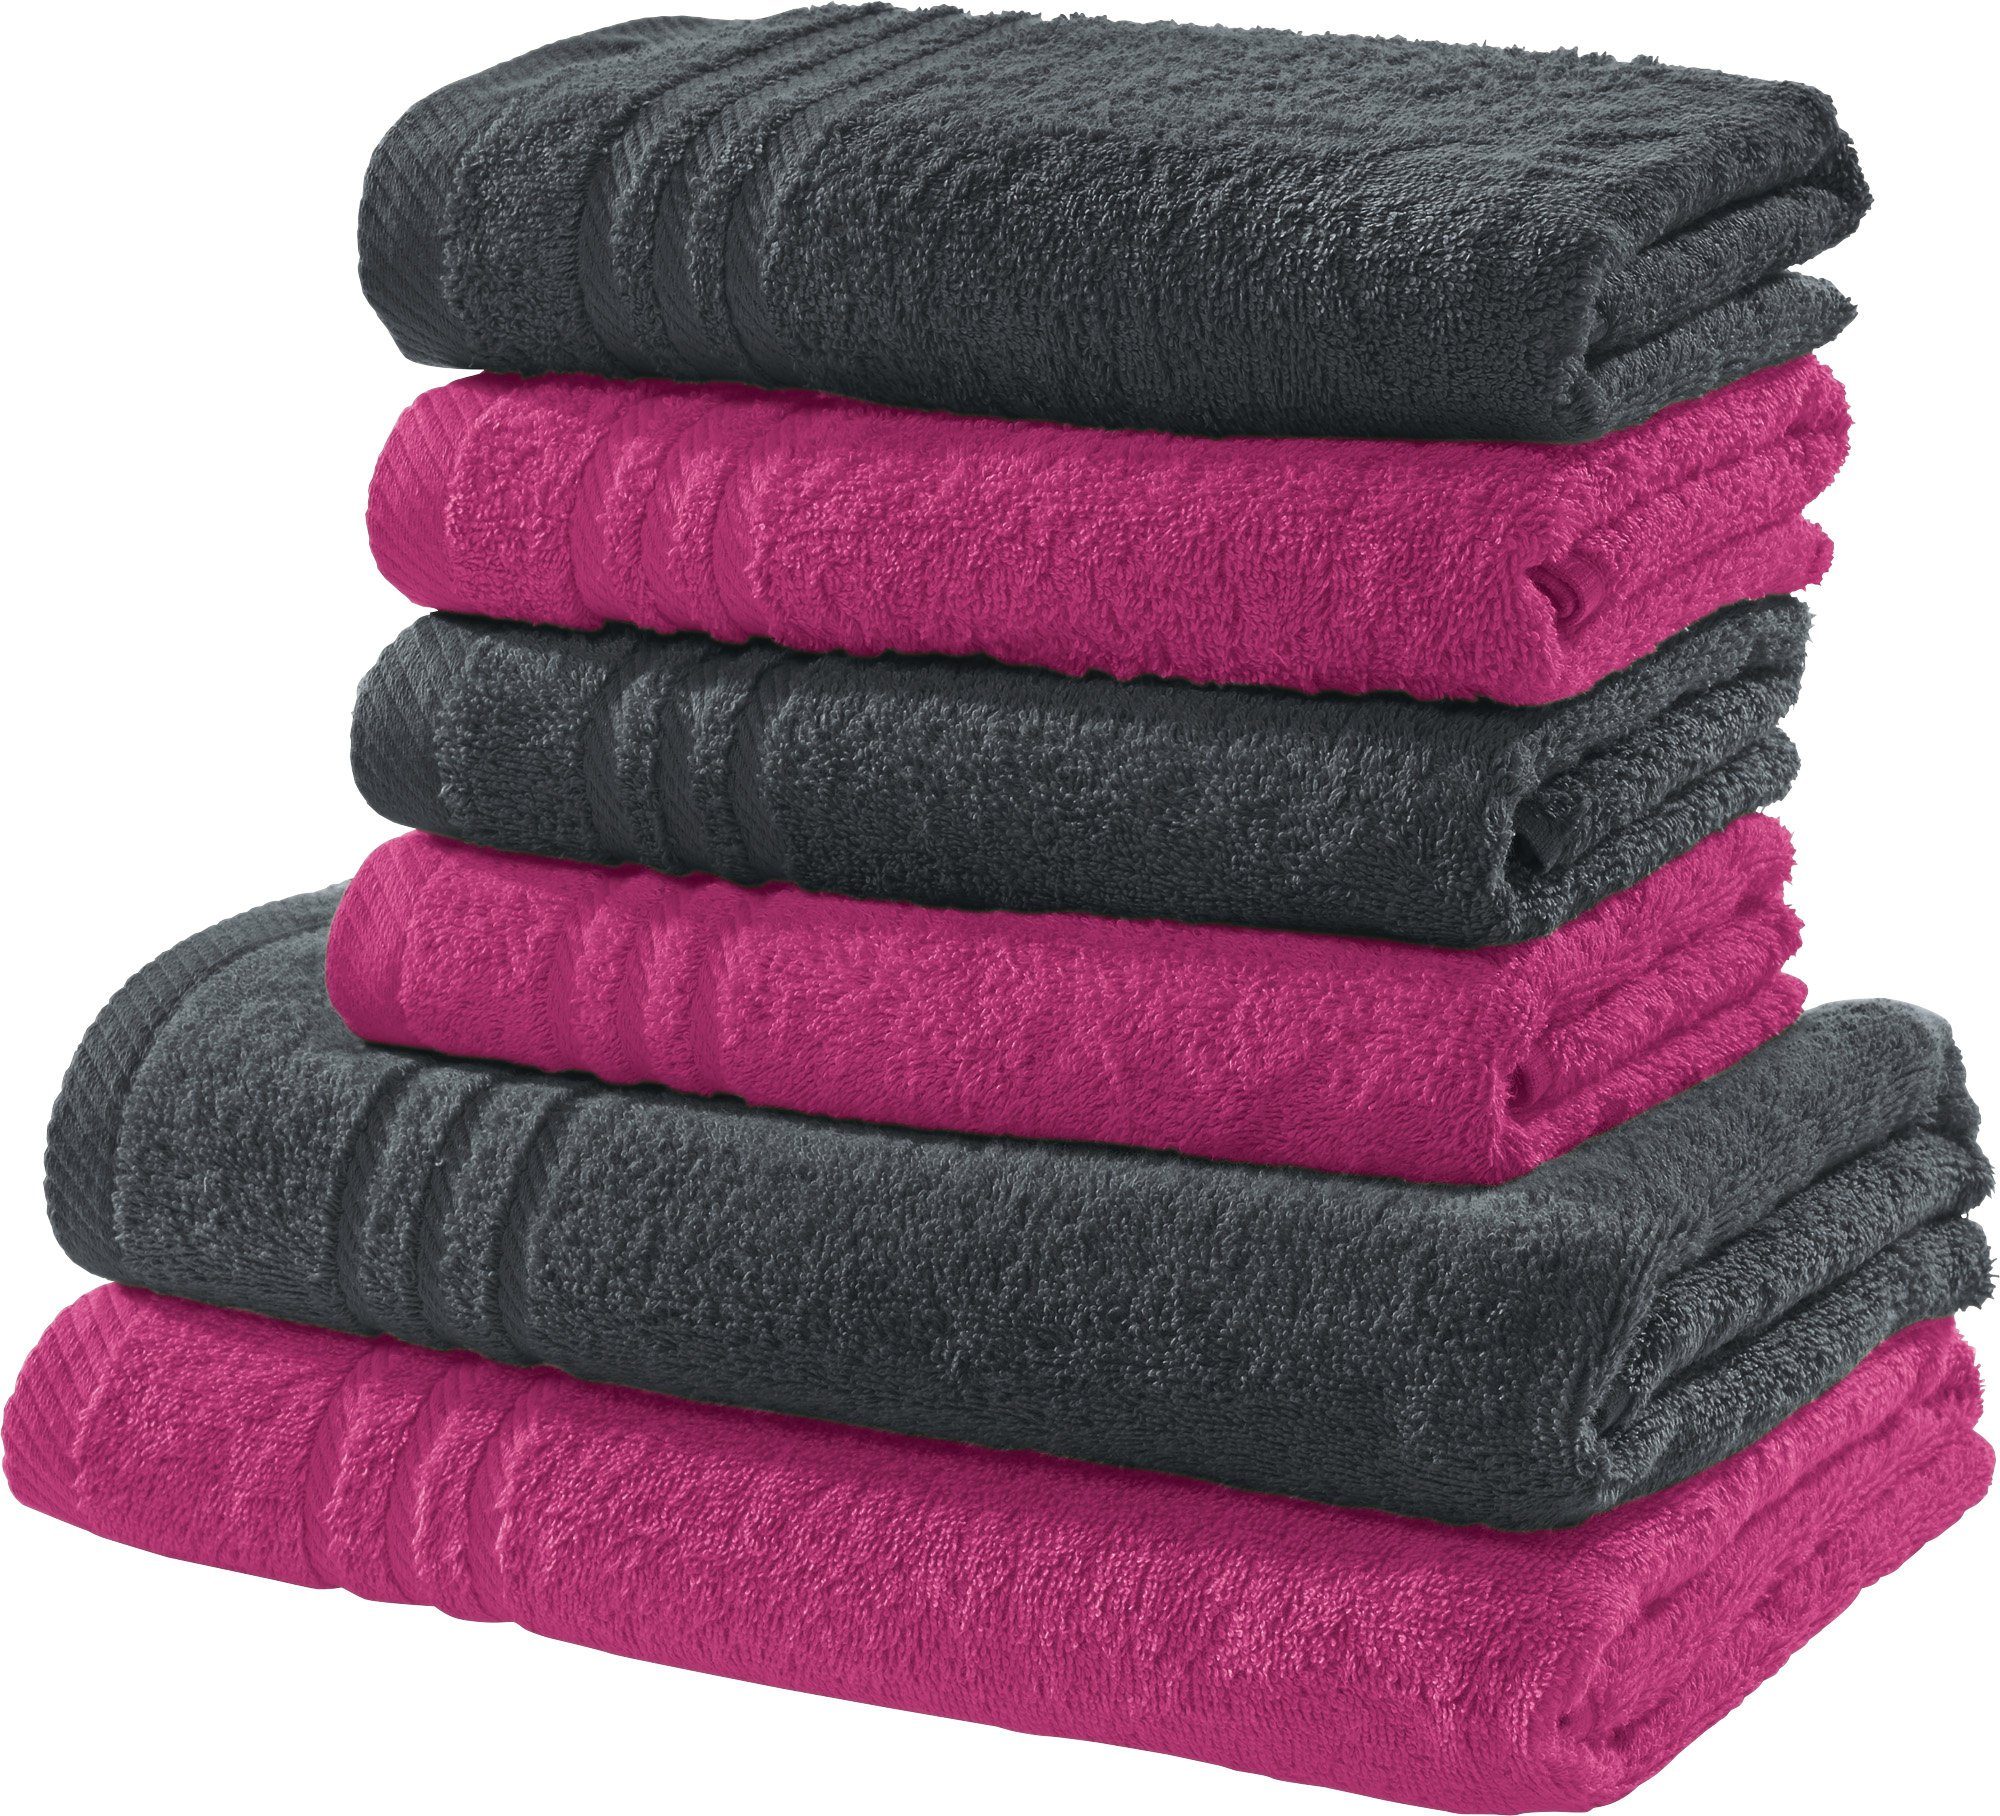 Rosa Handtuch-Sets online kaufen | OTTO | Handtuch-Sets